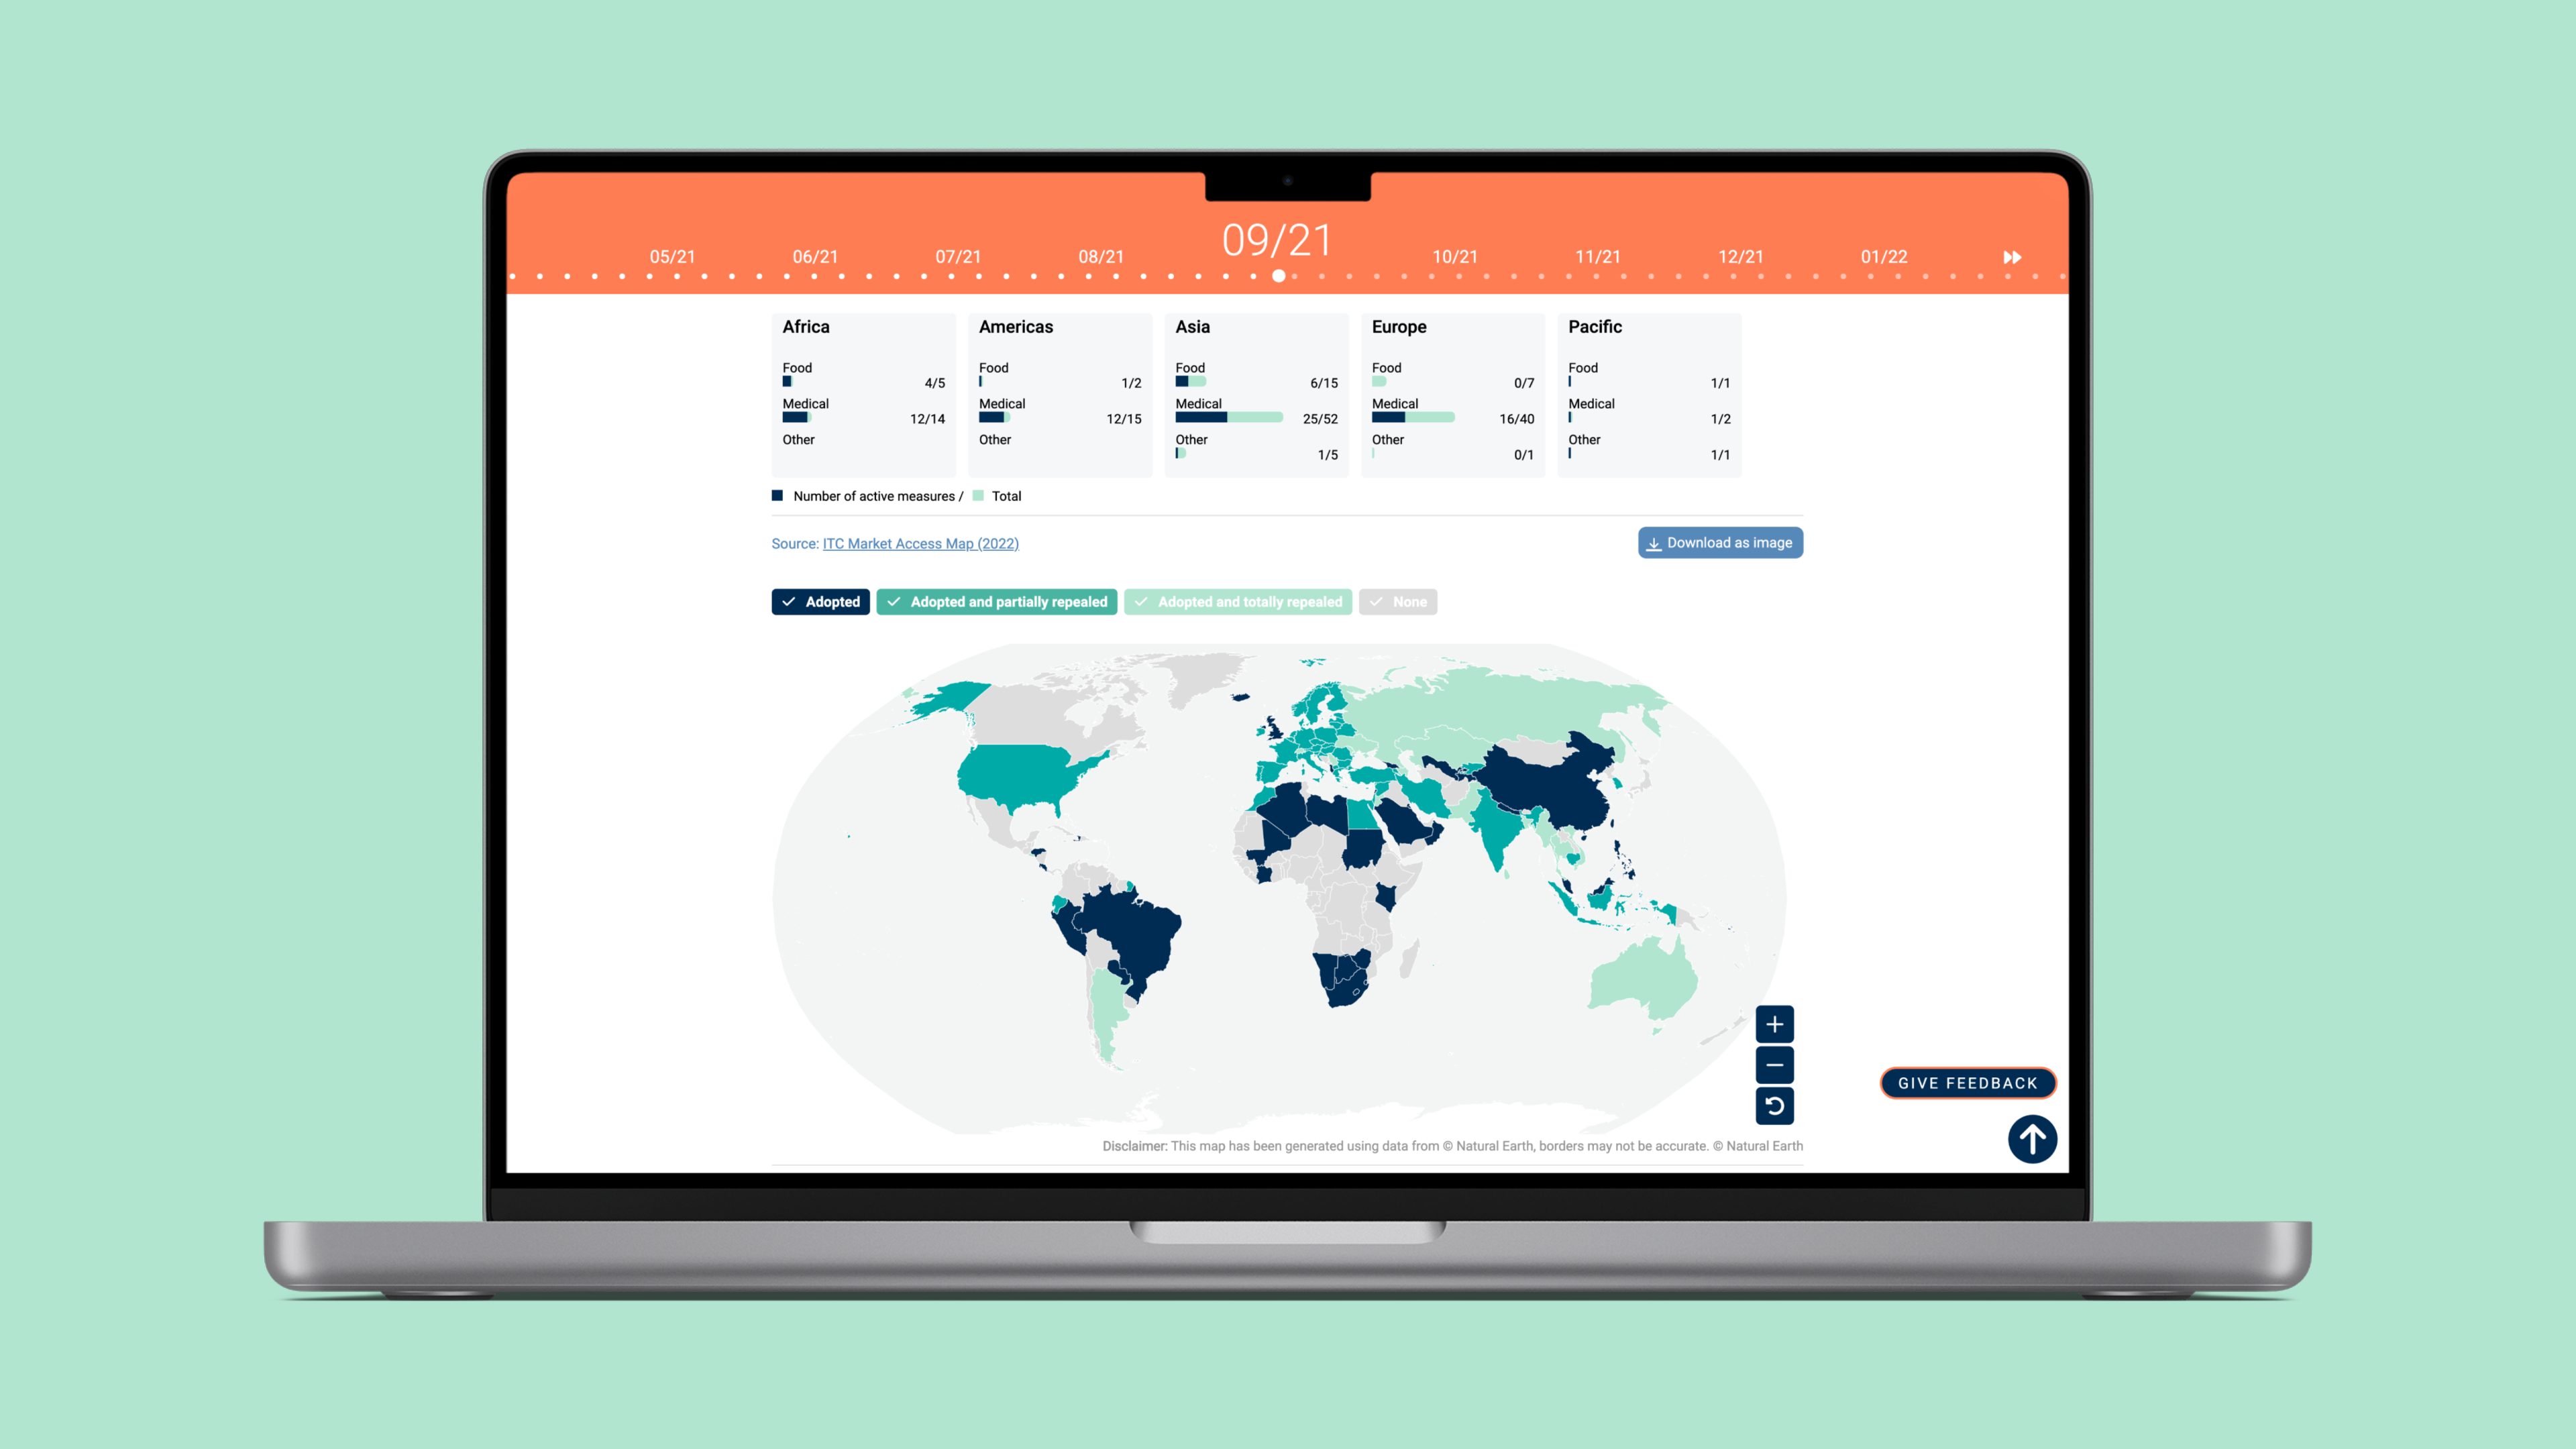 Die Website "Trade Briefs" zeigt eine Datenvisualisierung auf einer Weltkarte, die nach Regionen farbkodiert ist und einen globalen Überblick über die Handelsdaten bietet.